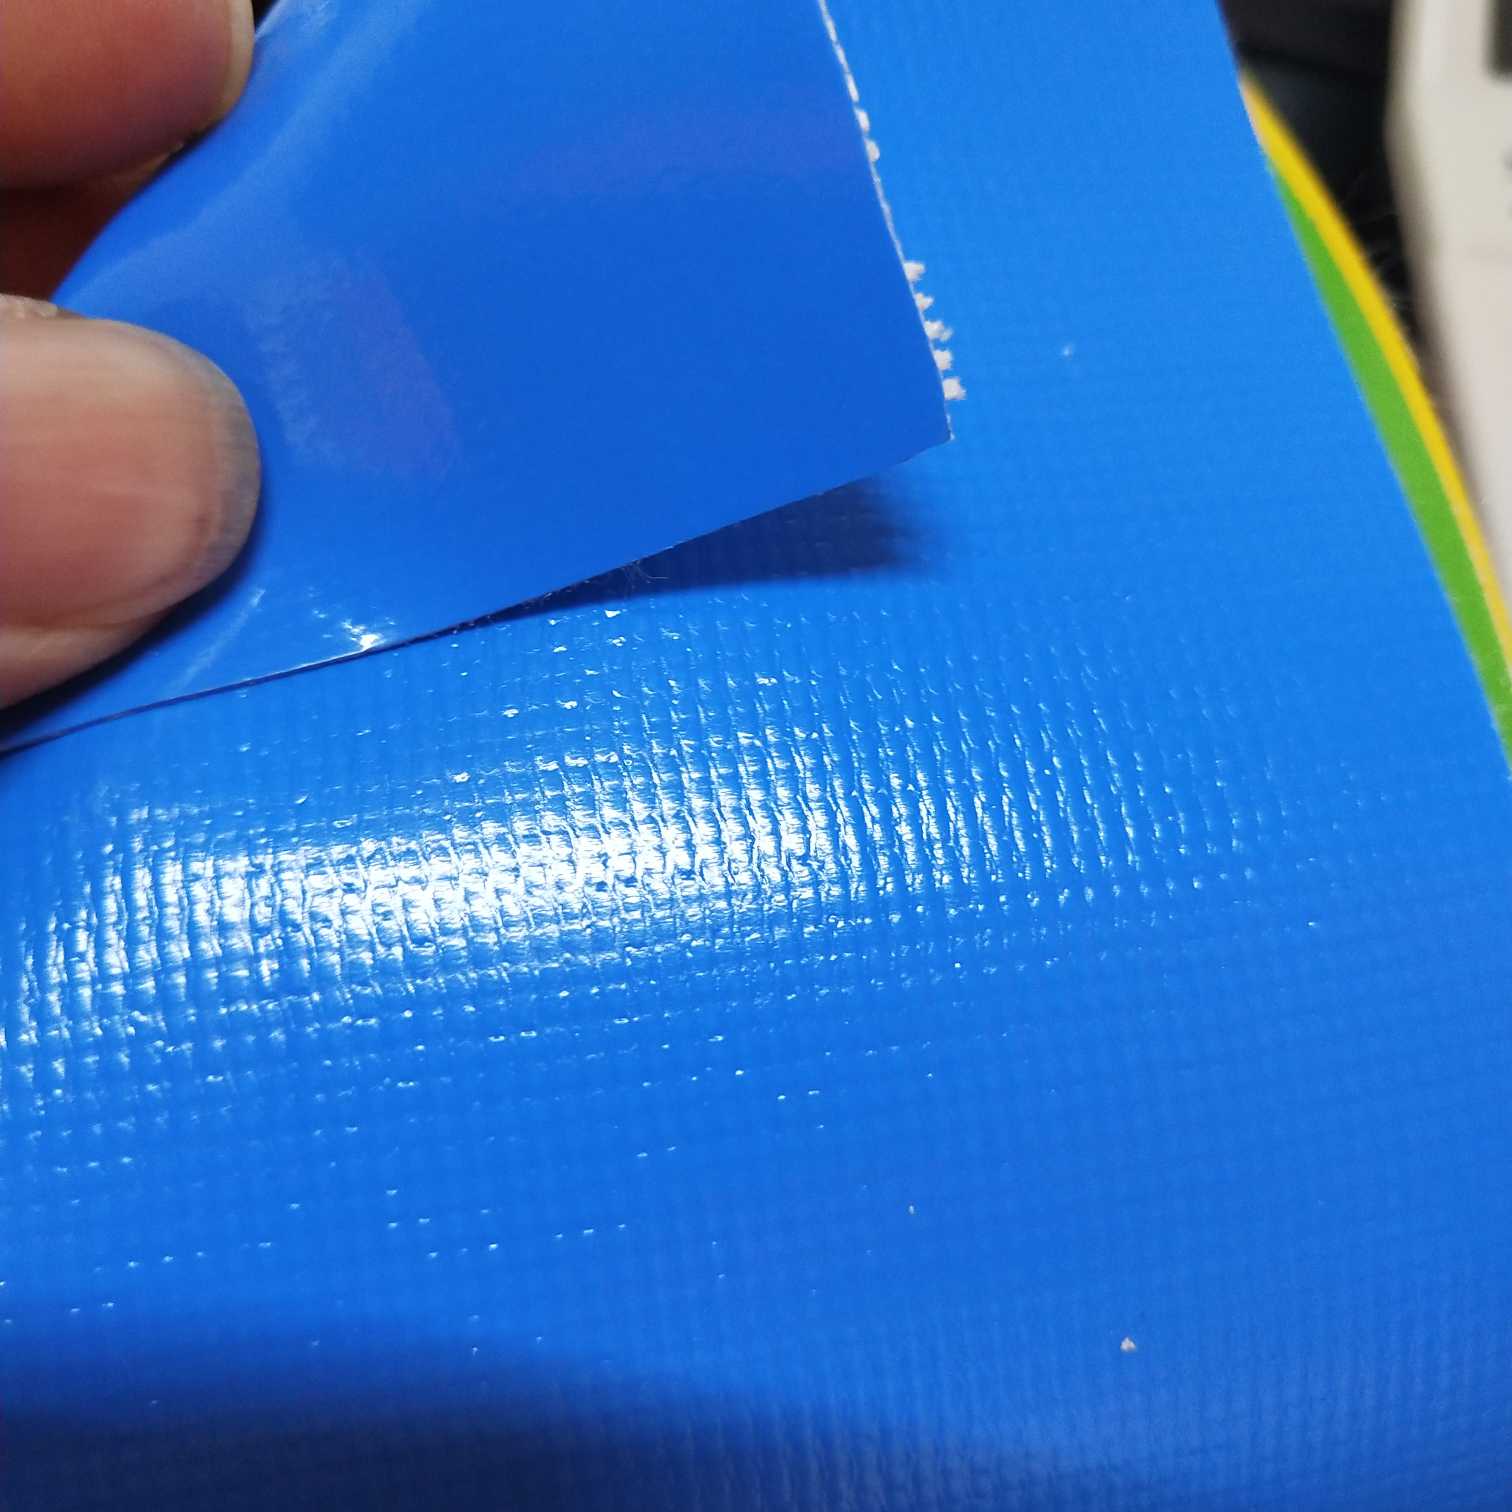 优质光面0.47mm厚浅蓝色PVC夹网布  箱包布  机器罩家具罩  体育游乐产品  格种箱包袋专用面料详情图1